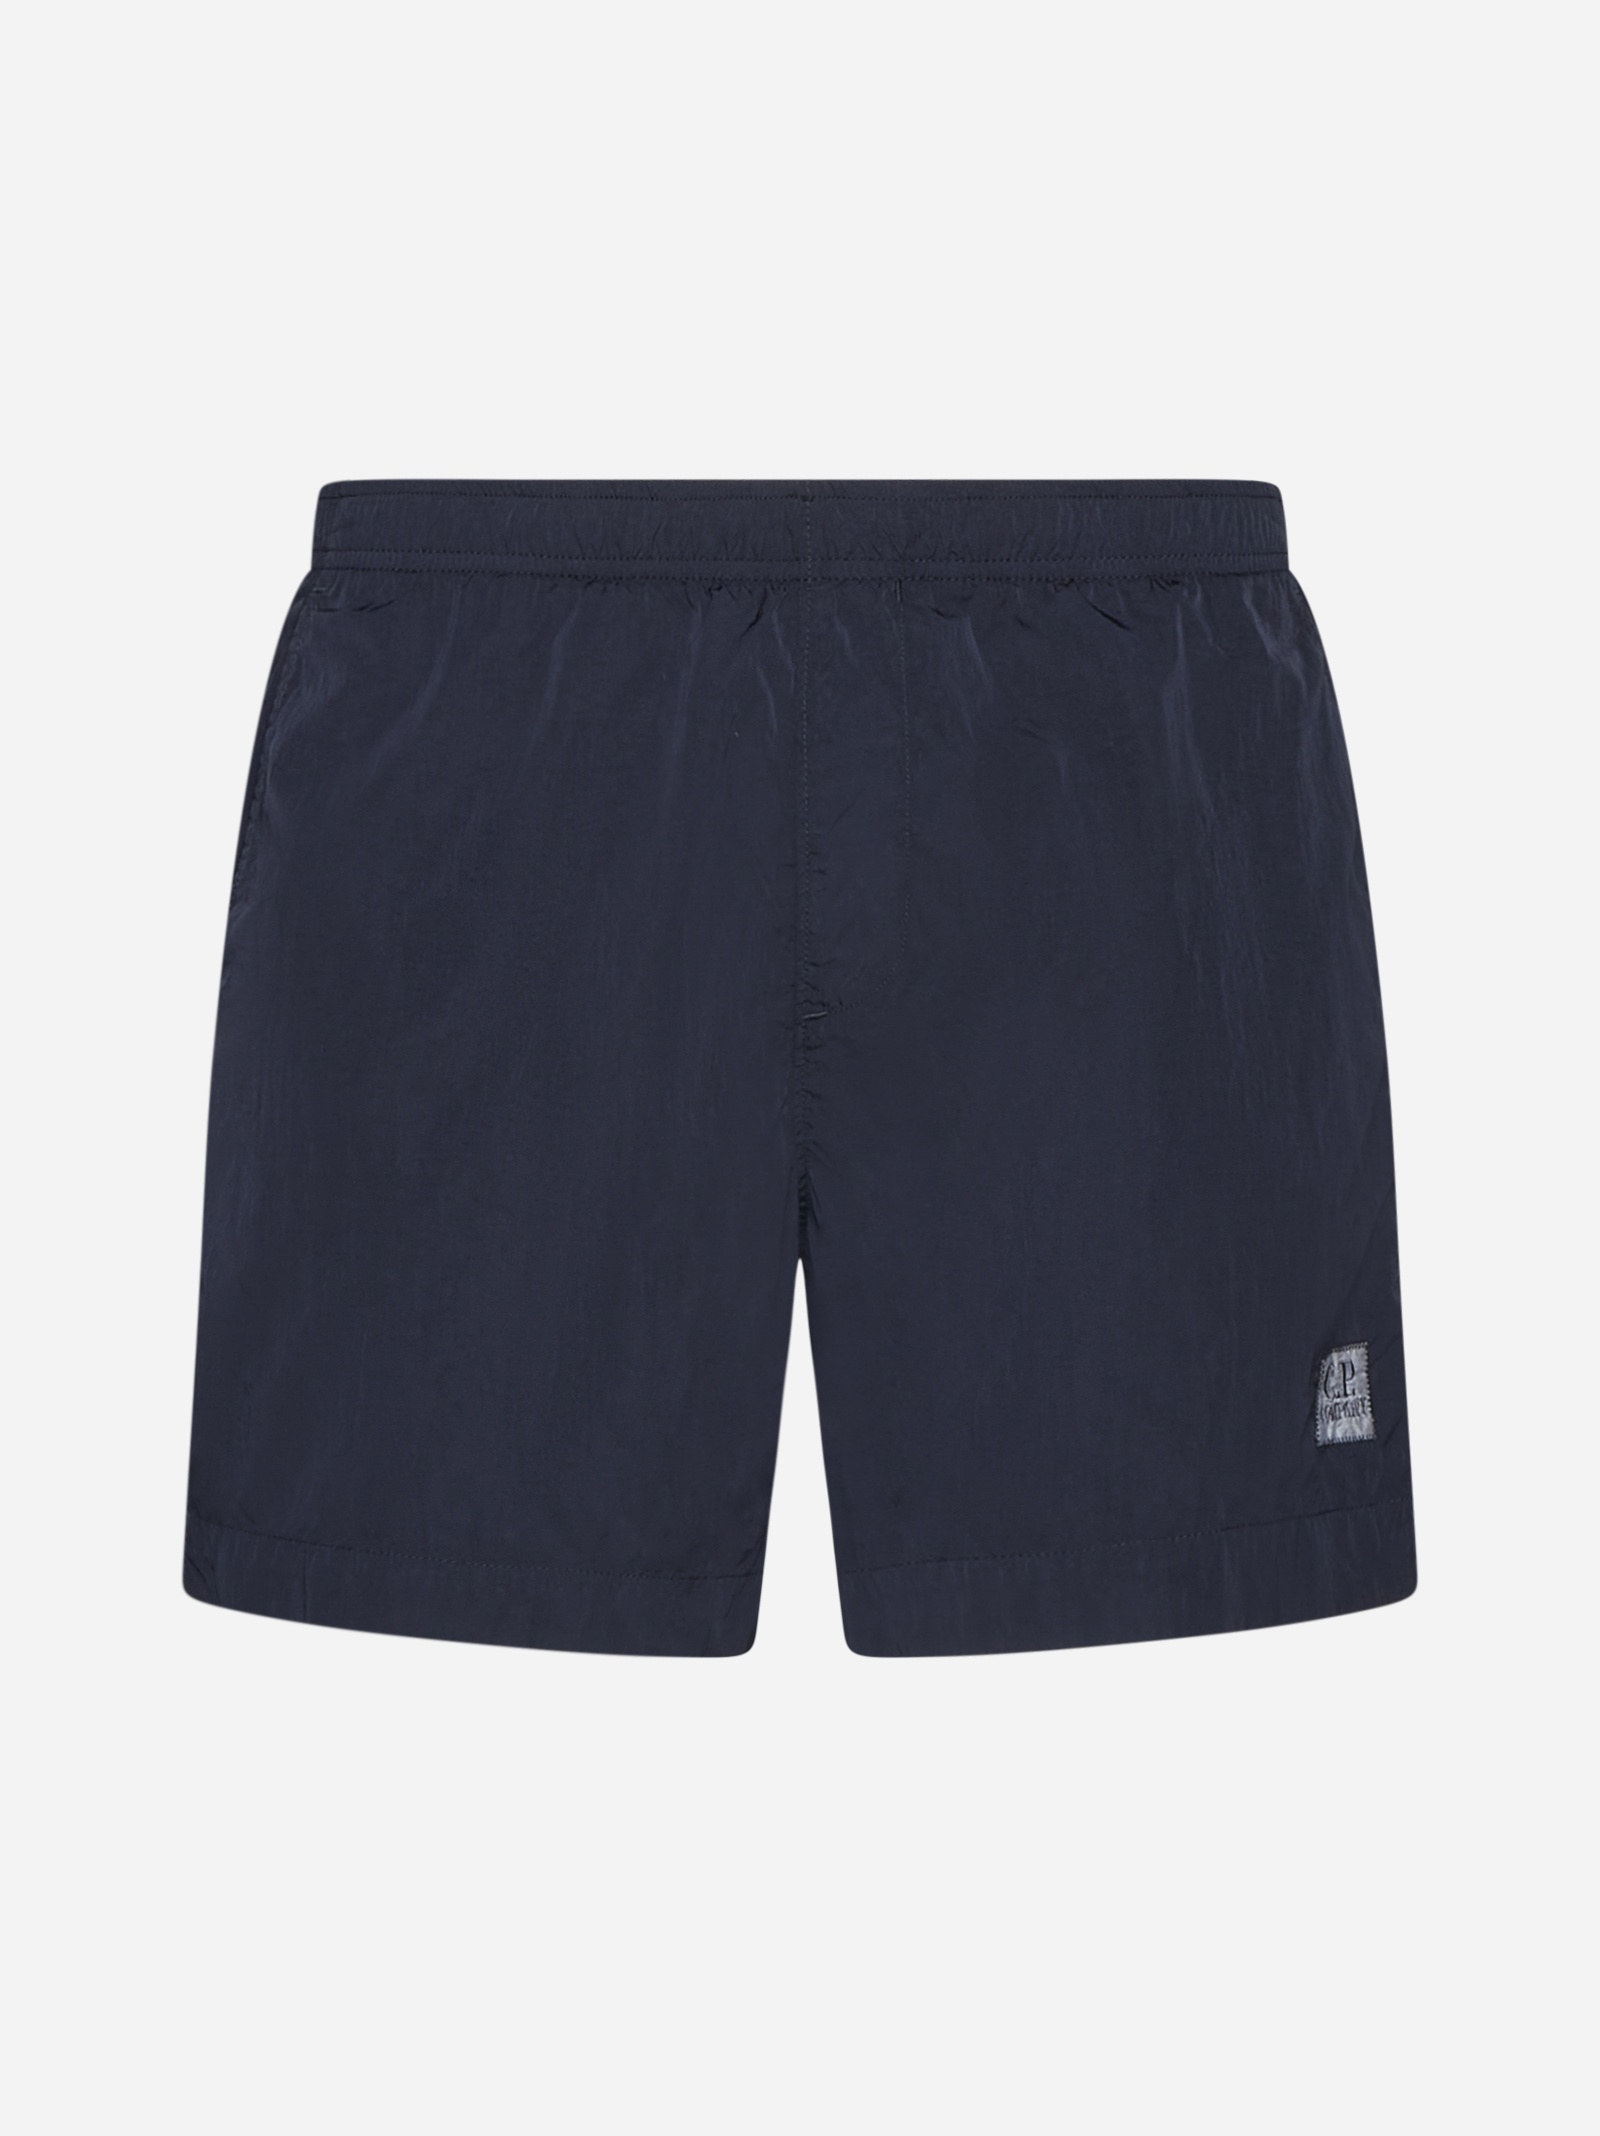 Eco-chrome-r nylon swim shorts - 1